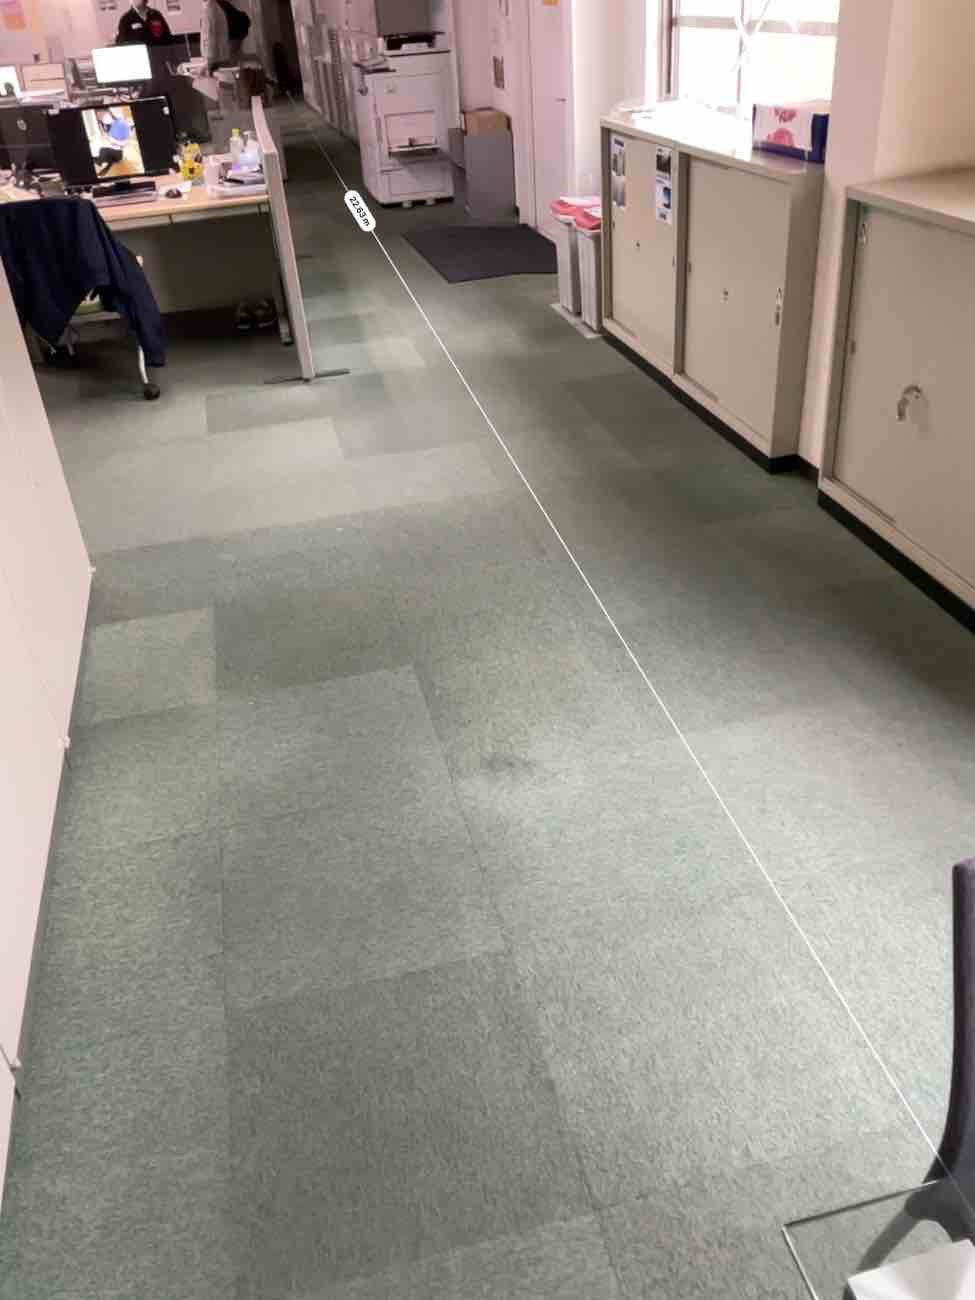 埼玉県加須市の事務所にて、稼働中オフィスのタイルカーペット張替工事を行いました。（東リタイルカーペットGA-100）【秀和建工】